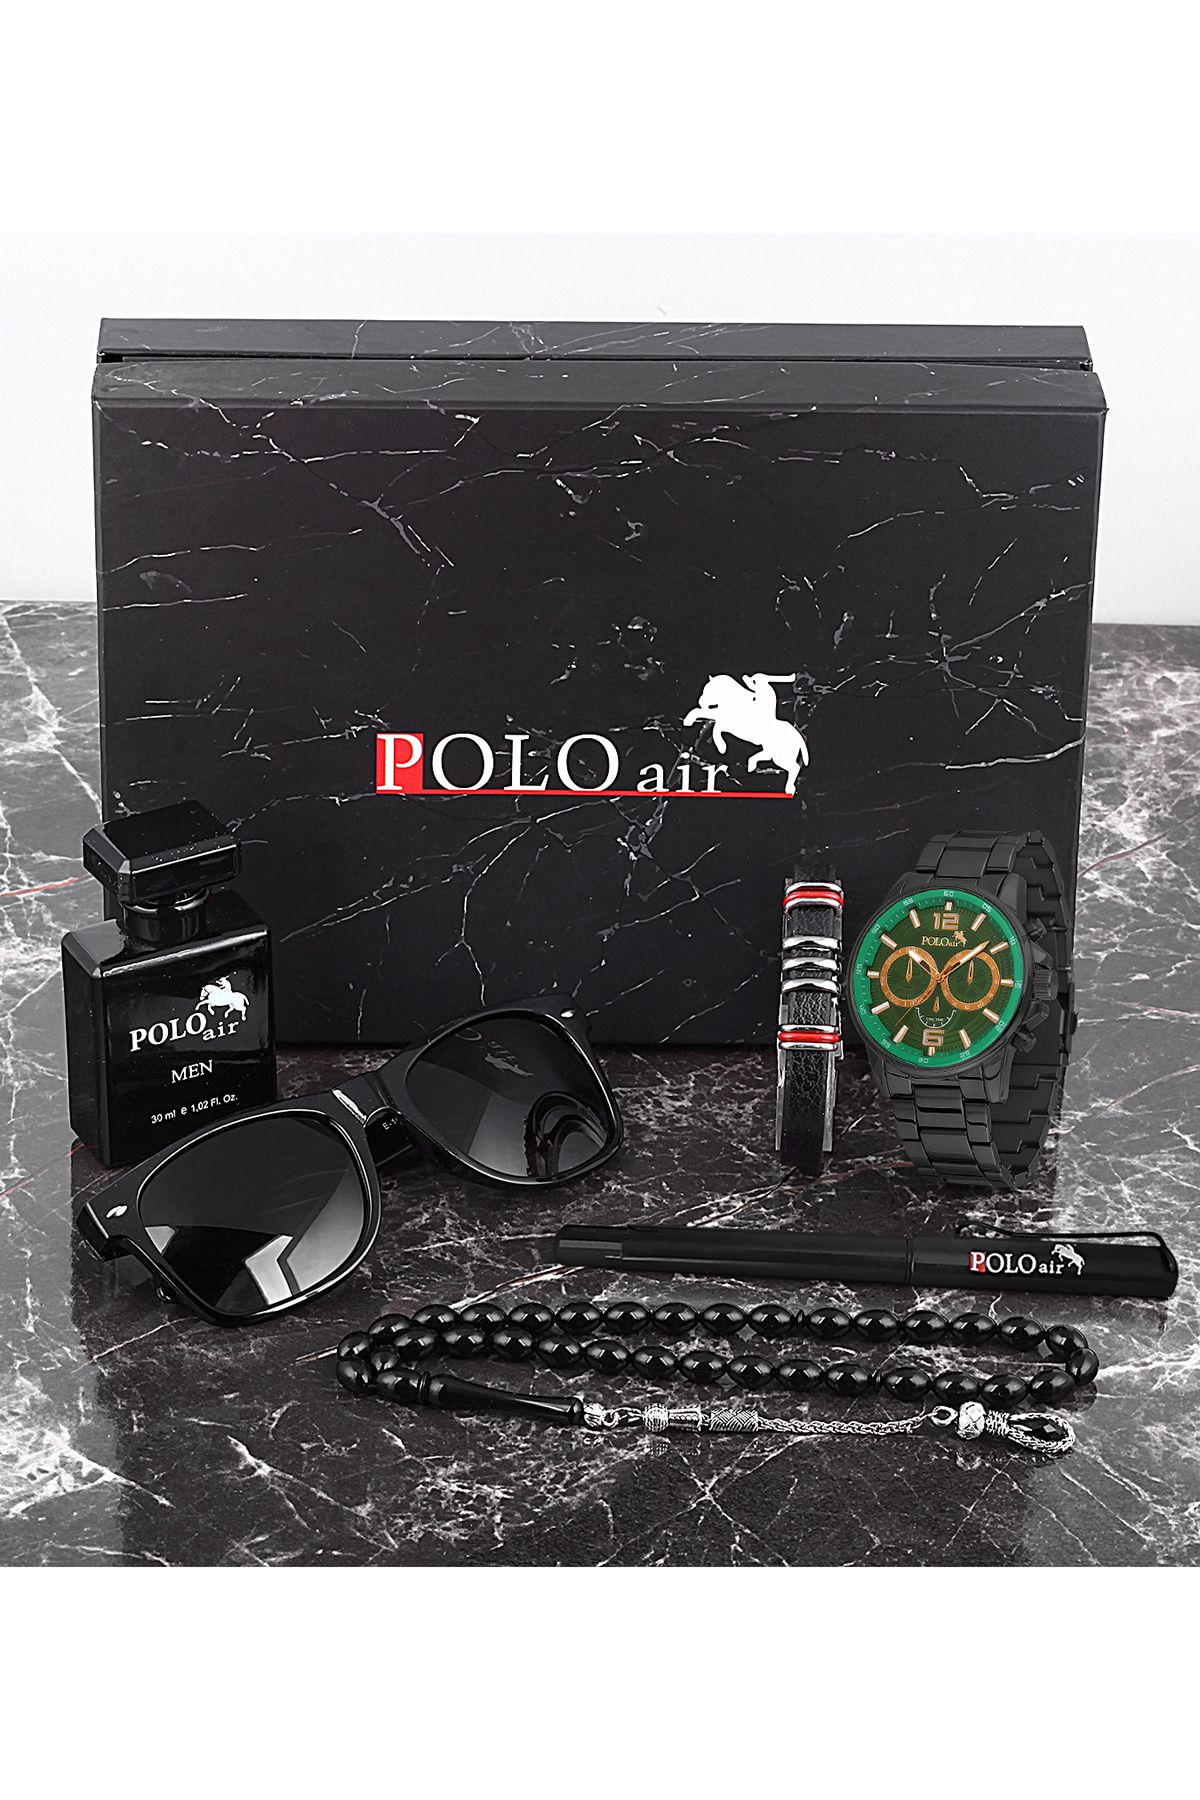 polo air Erkek Set Saat Gözlük Parfüm Tesbih Kalem Bileklik Özel Kutulu Siyah-İçi Yeşil